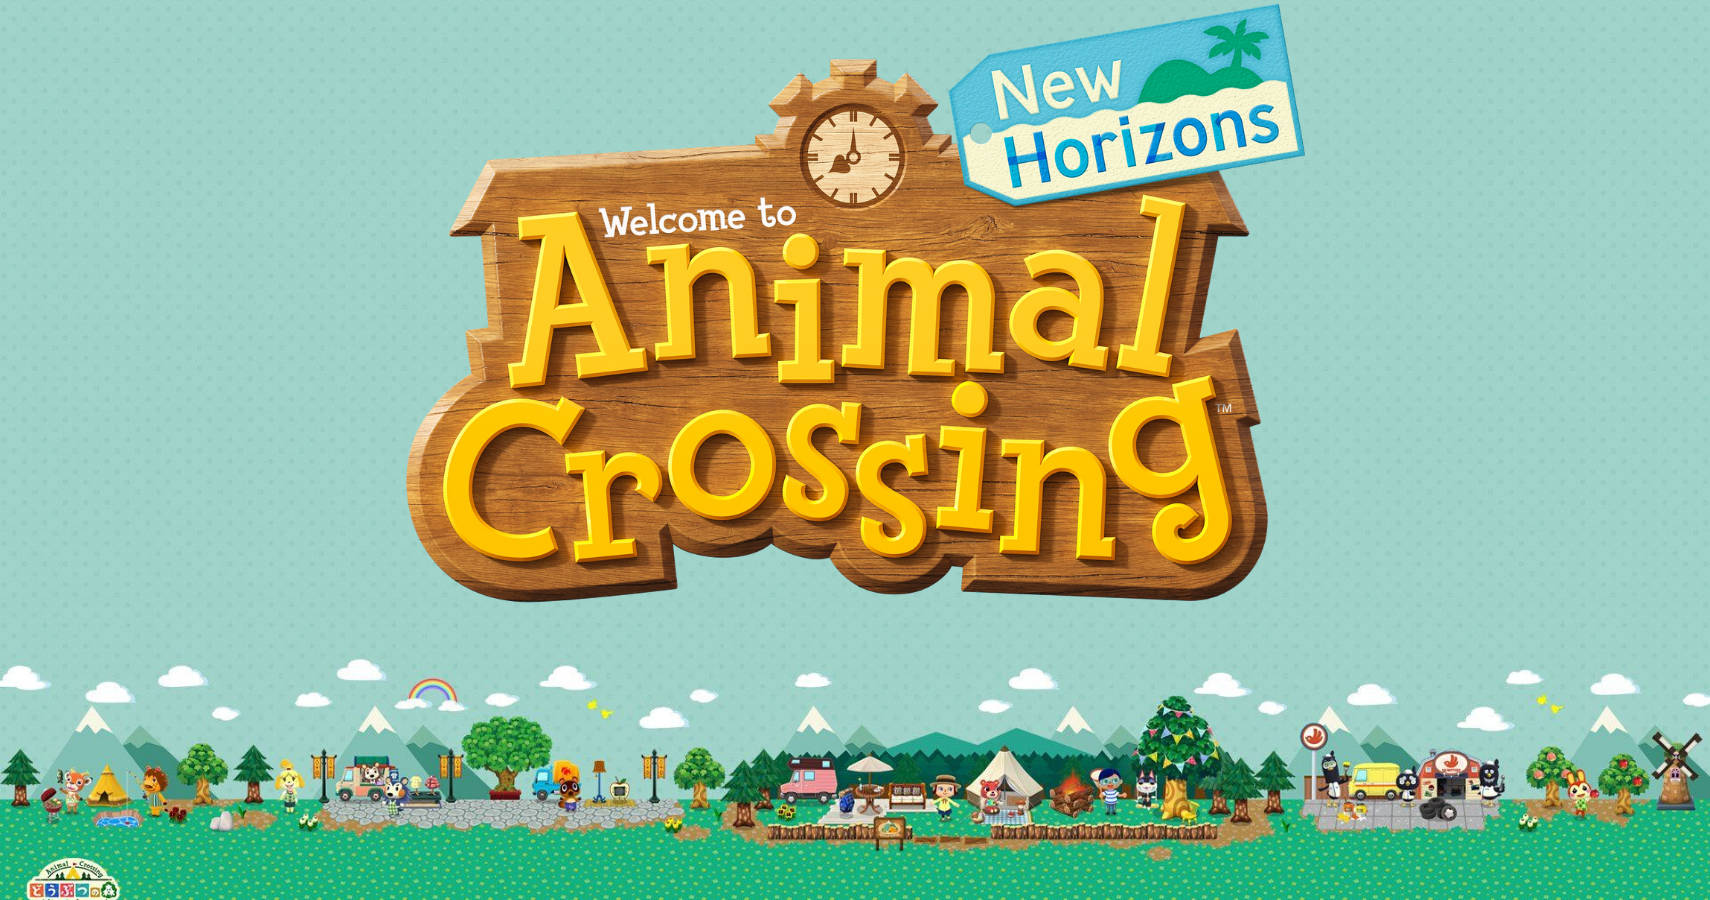 Анонс следующего обновления для игры Animal Crossing: New Horizons состоится 15 октября